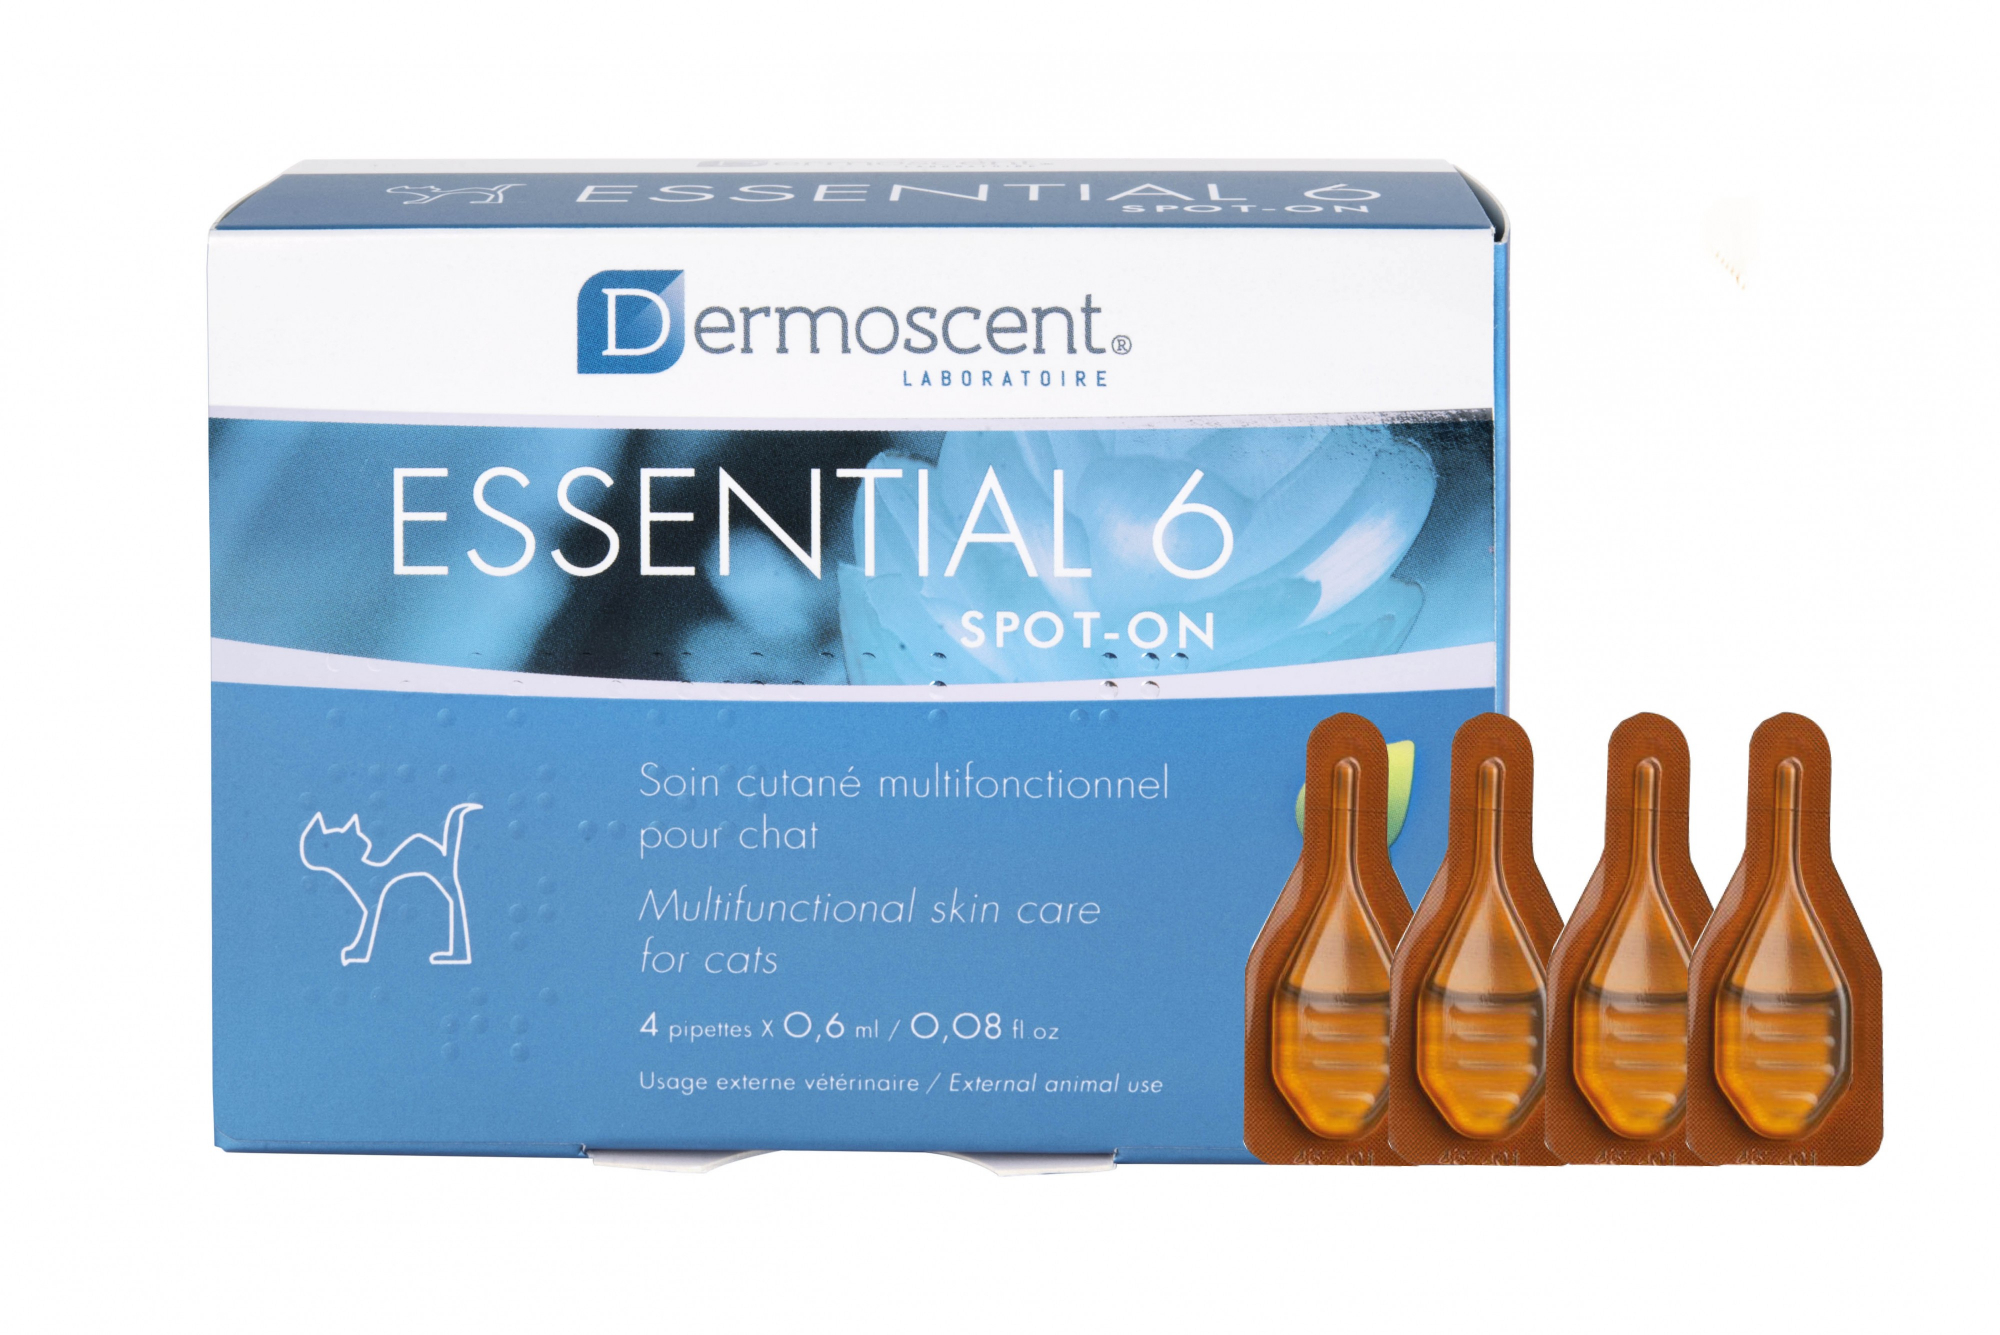 Dermoscent Essential 6 Spot-on multifunktionale Einzeldosis für Katzen